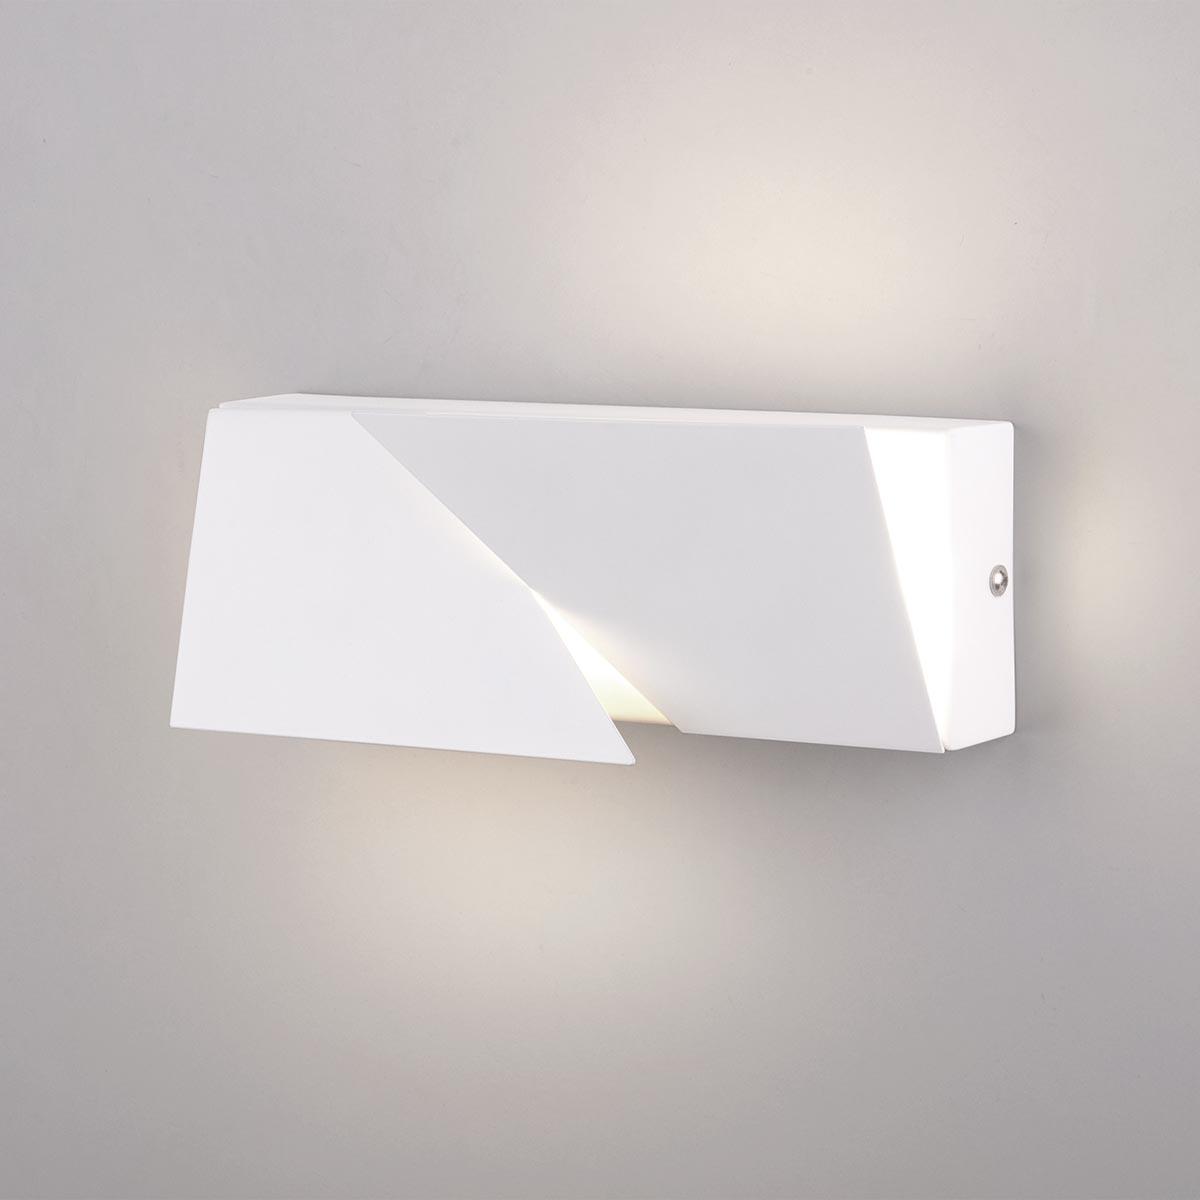 Настенный светодиодный светильник Elektrostandard Snip 40106/LED белый 4690389176173 настенный светодиодный светильник elektrostandard snip 40116 led белый 4690389182020